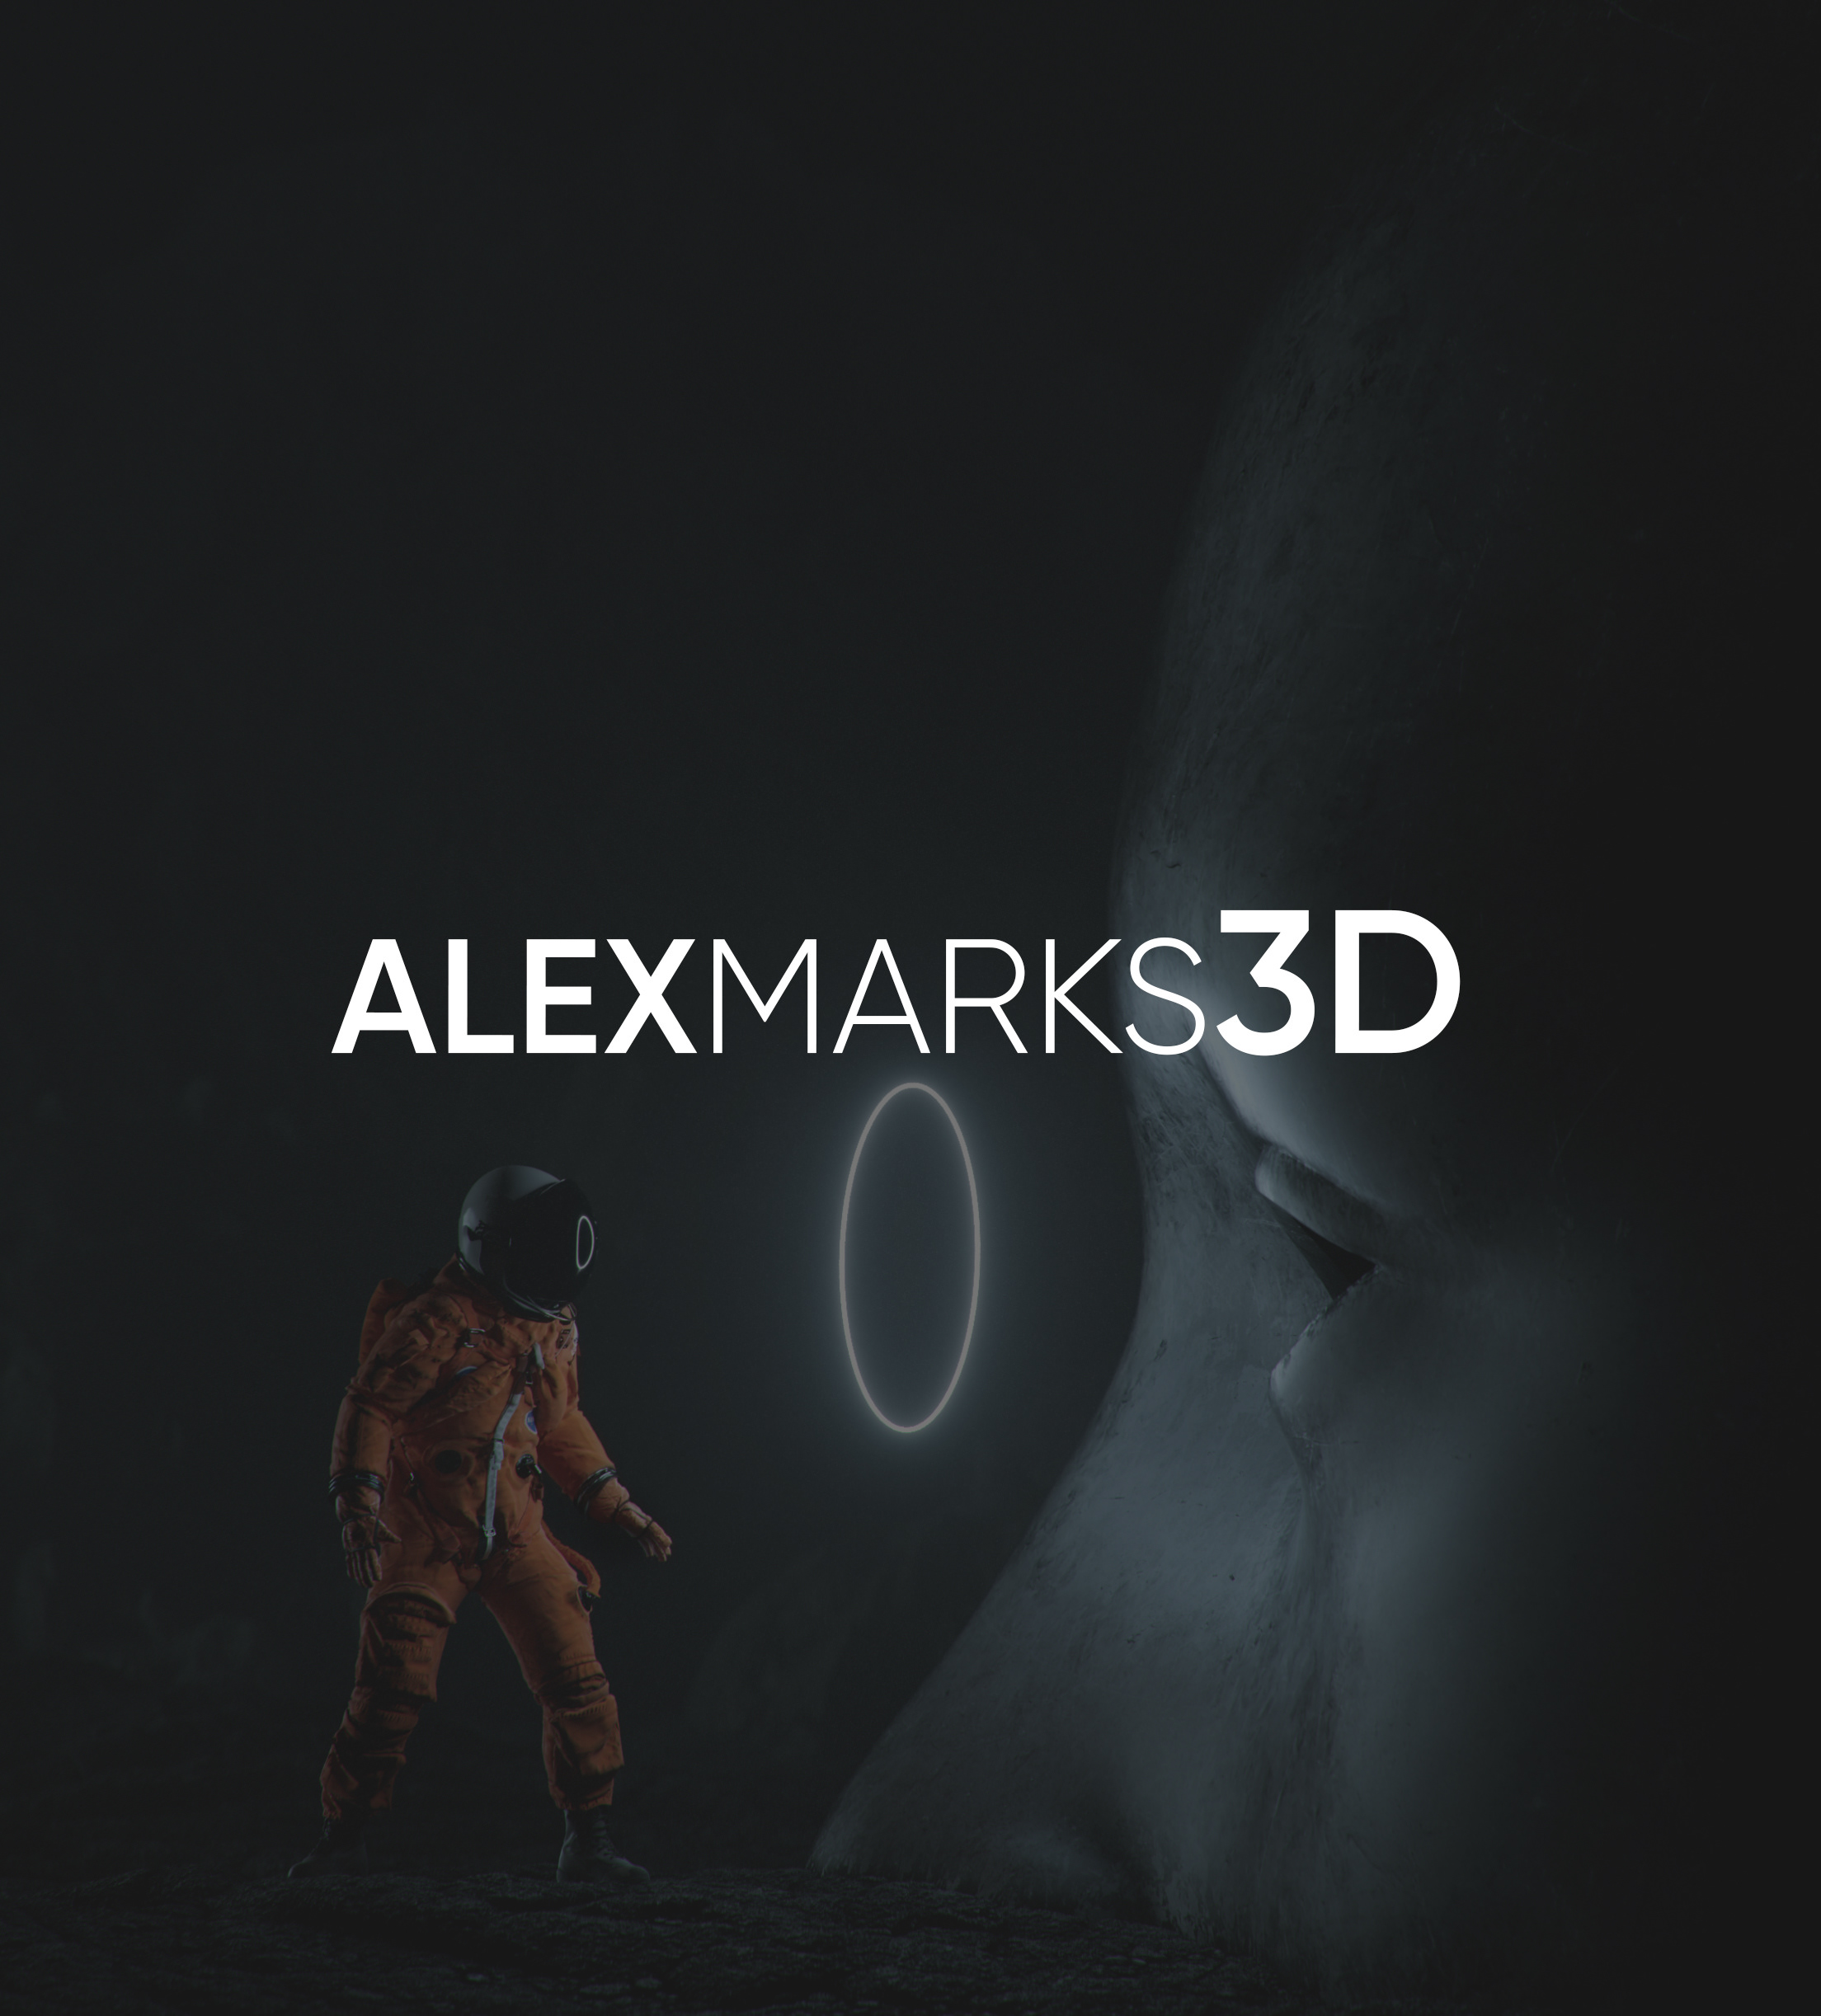 alexmarks3d.com